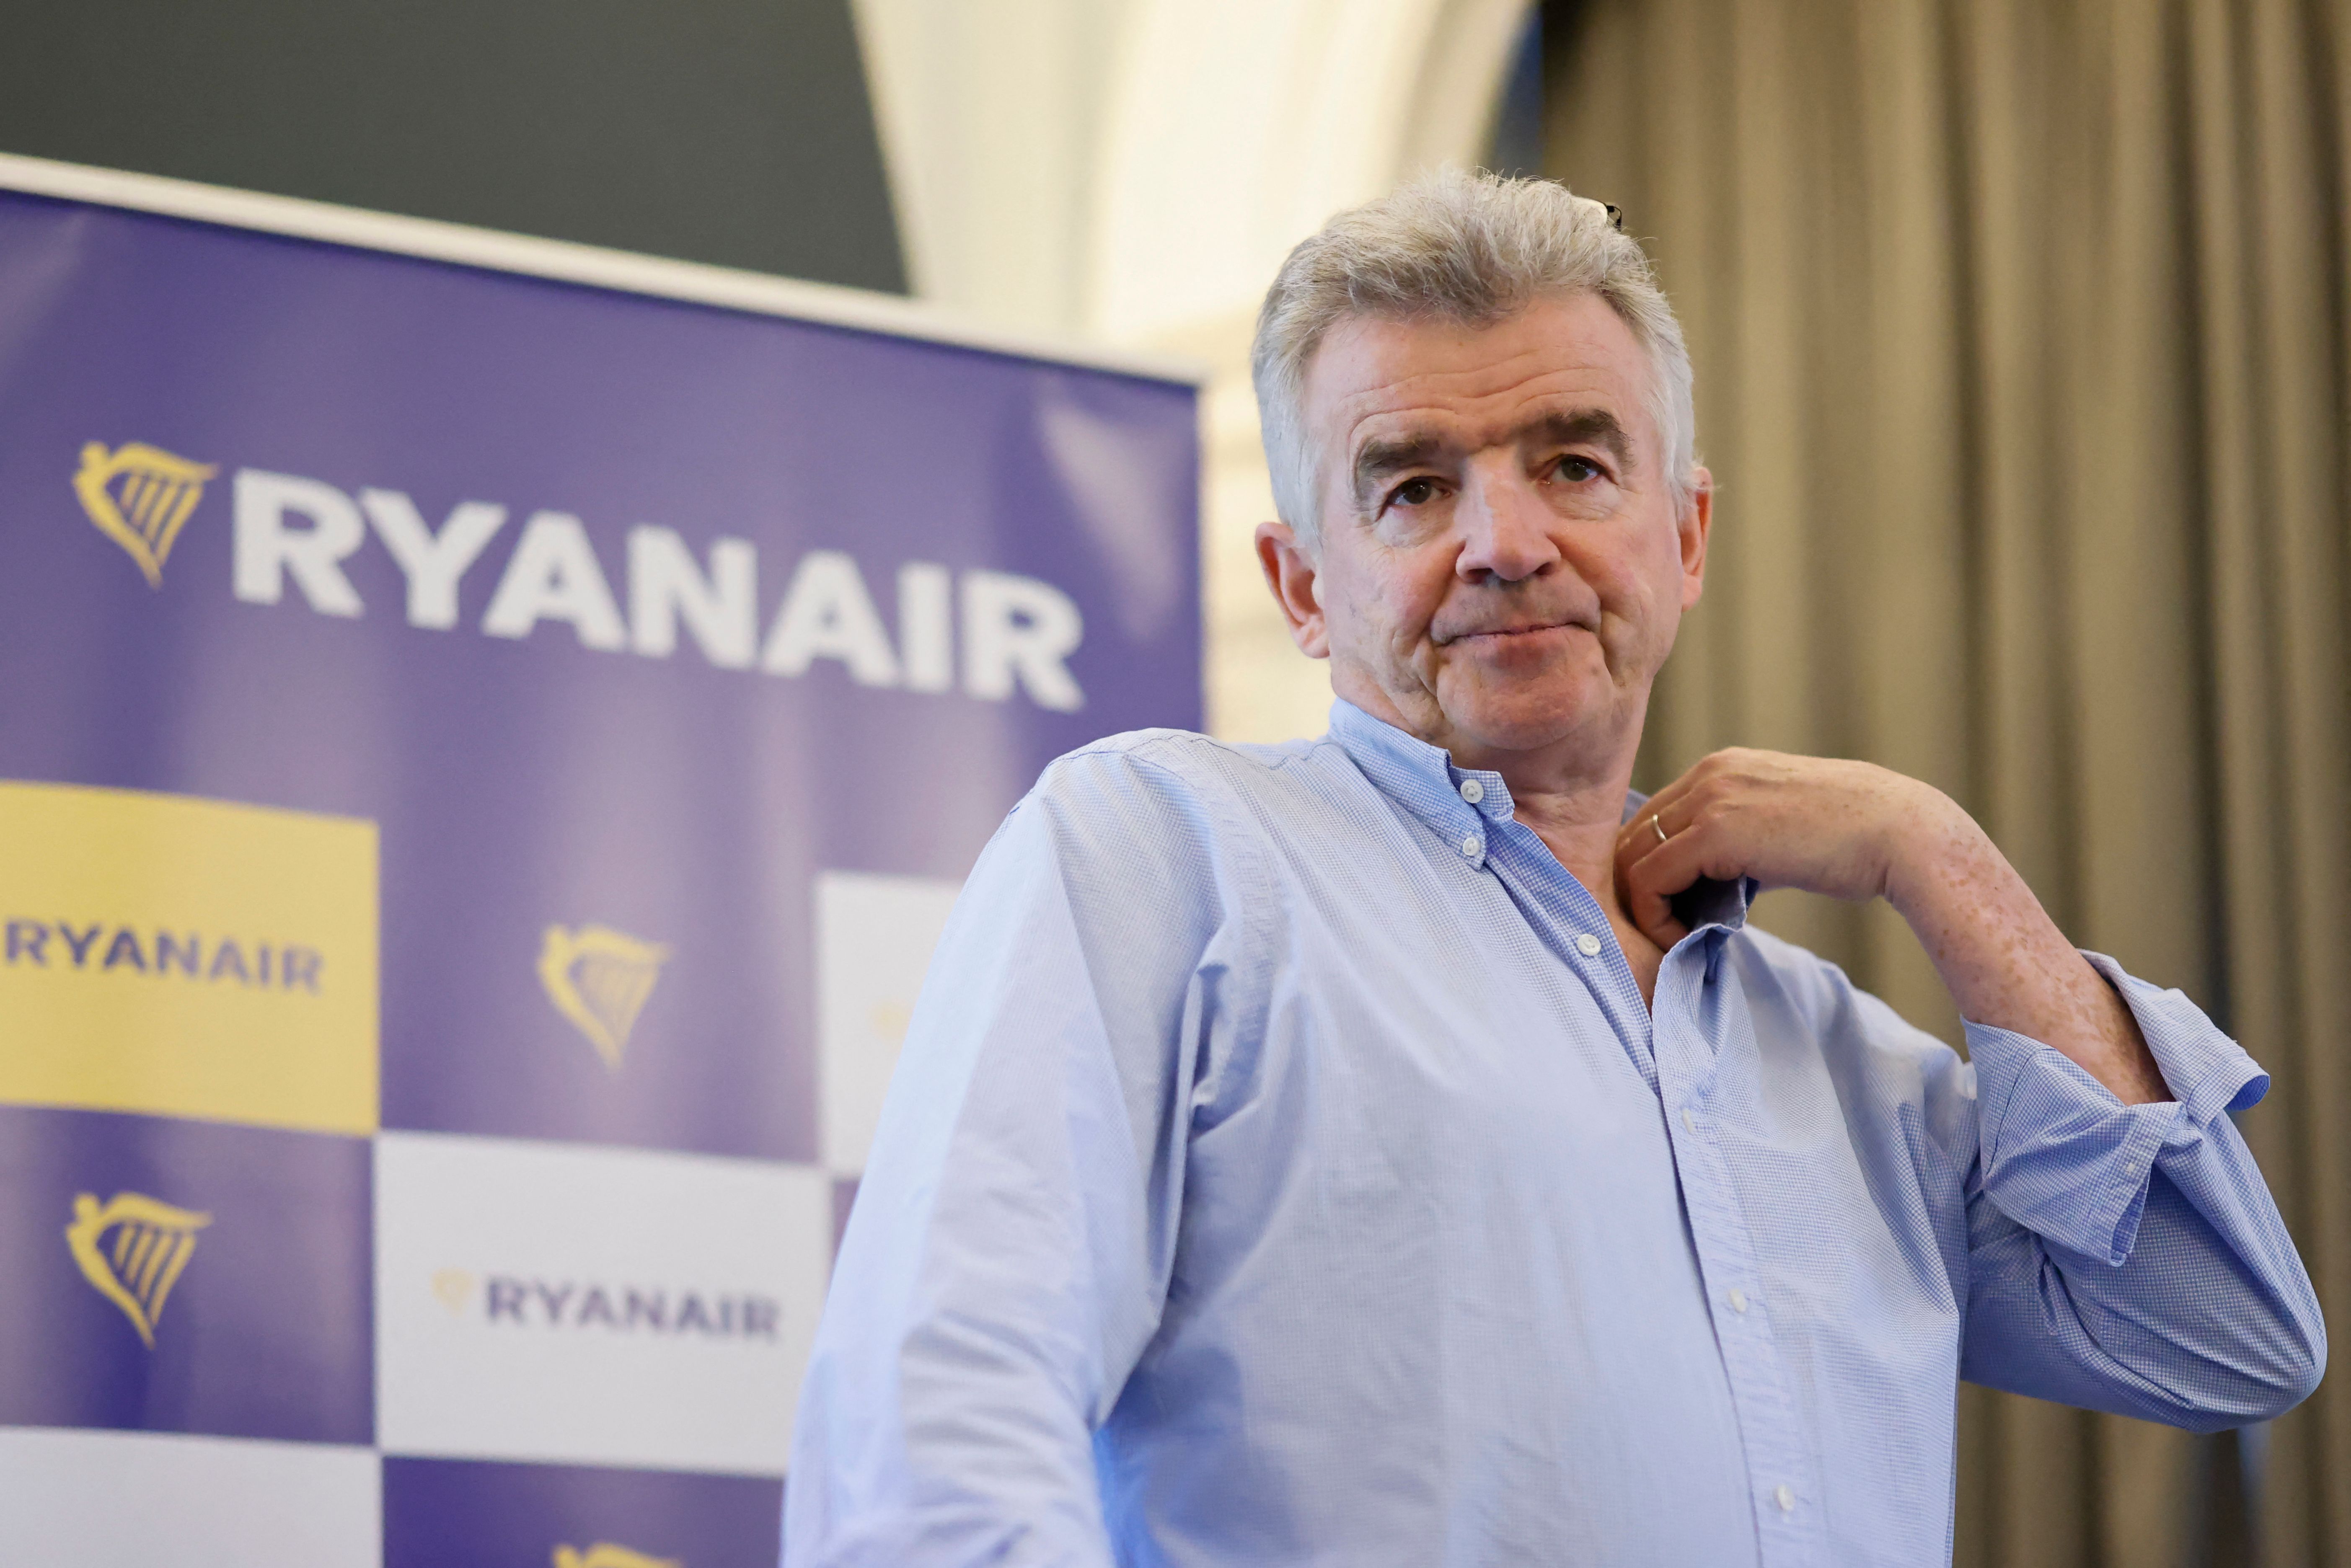 Ryanair-Chef Michael O’Leary hatte zuvor rechtliche Schritte gegen Booking.com eingeleitet, nachdem das Unternehmen die Auflistung seiner Flüge eingestellt hatte